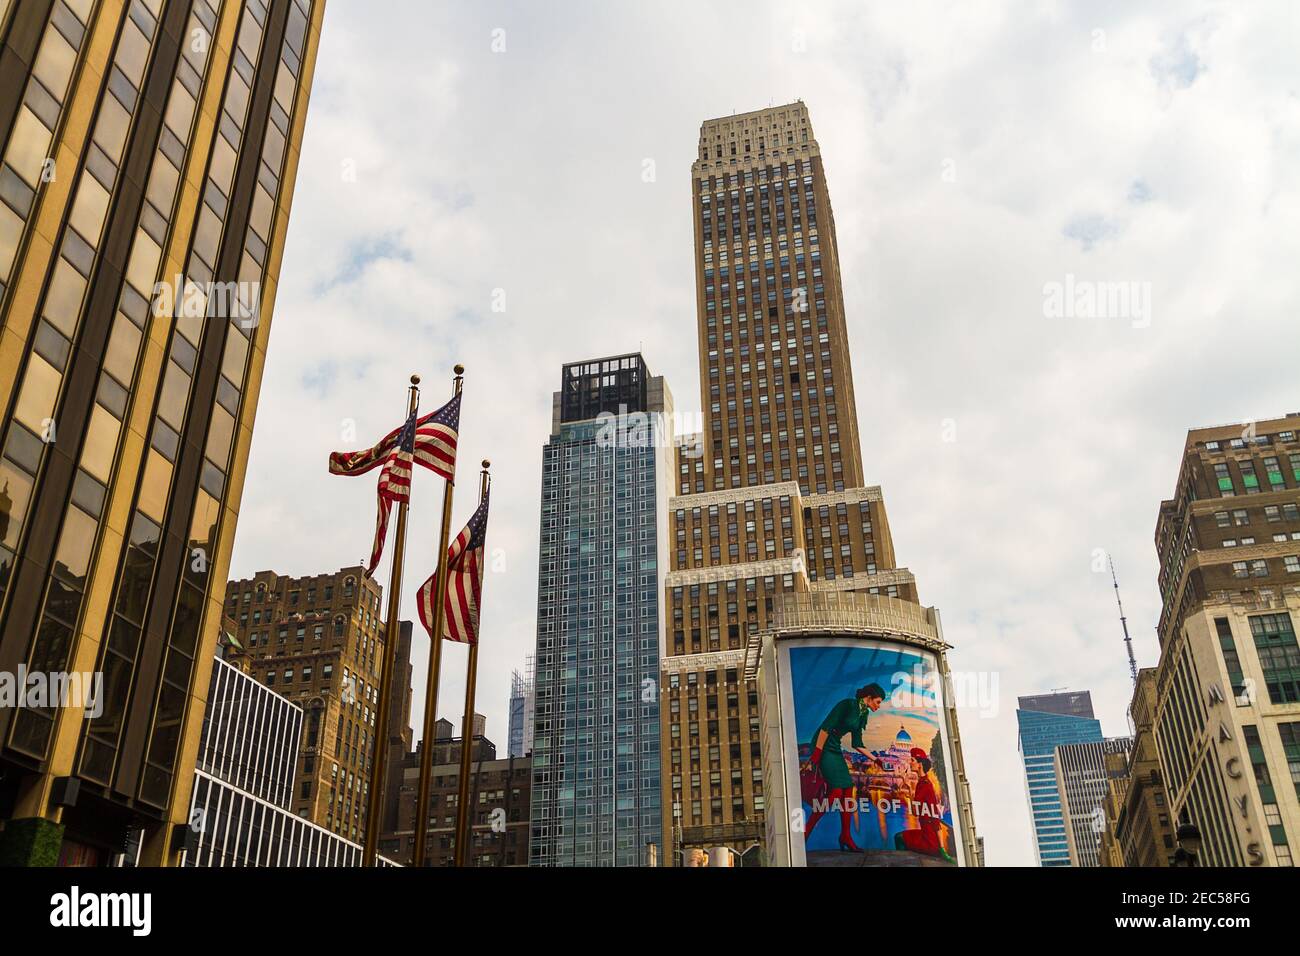 Bandiere e edifici americani sulla 7th Avenue mentre si va Fashion Avenue e il cartellone pubblicitario scritto 'Made of Italy' su di esso Foto Stock